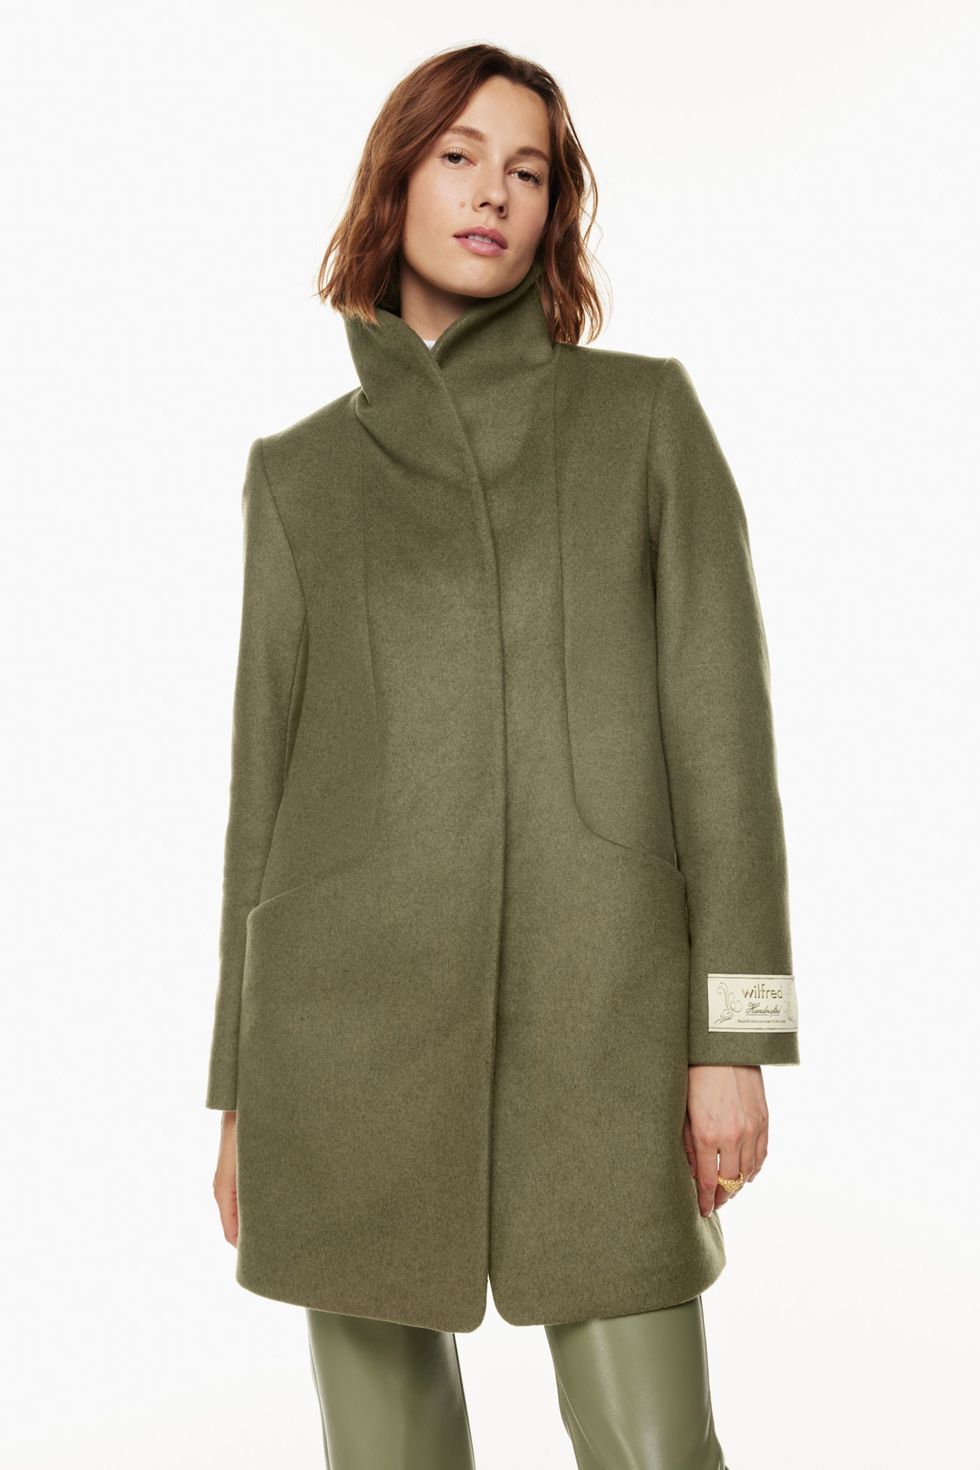 48 Best Winter coats women ideas  winter fashion, winter coats